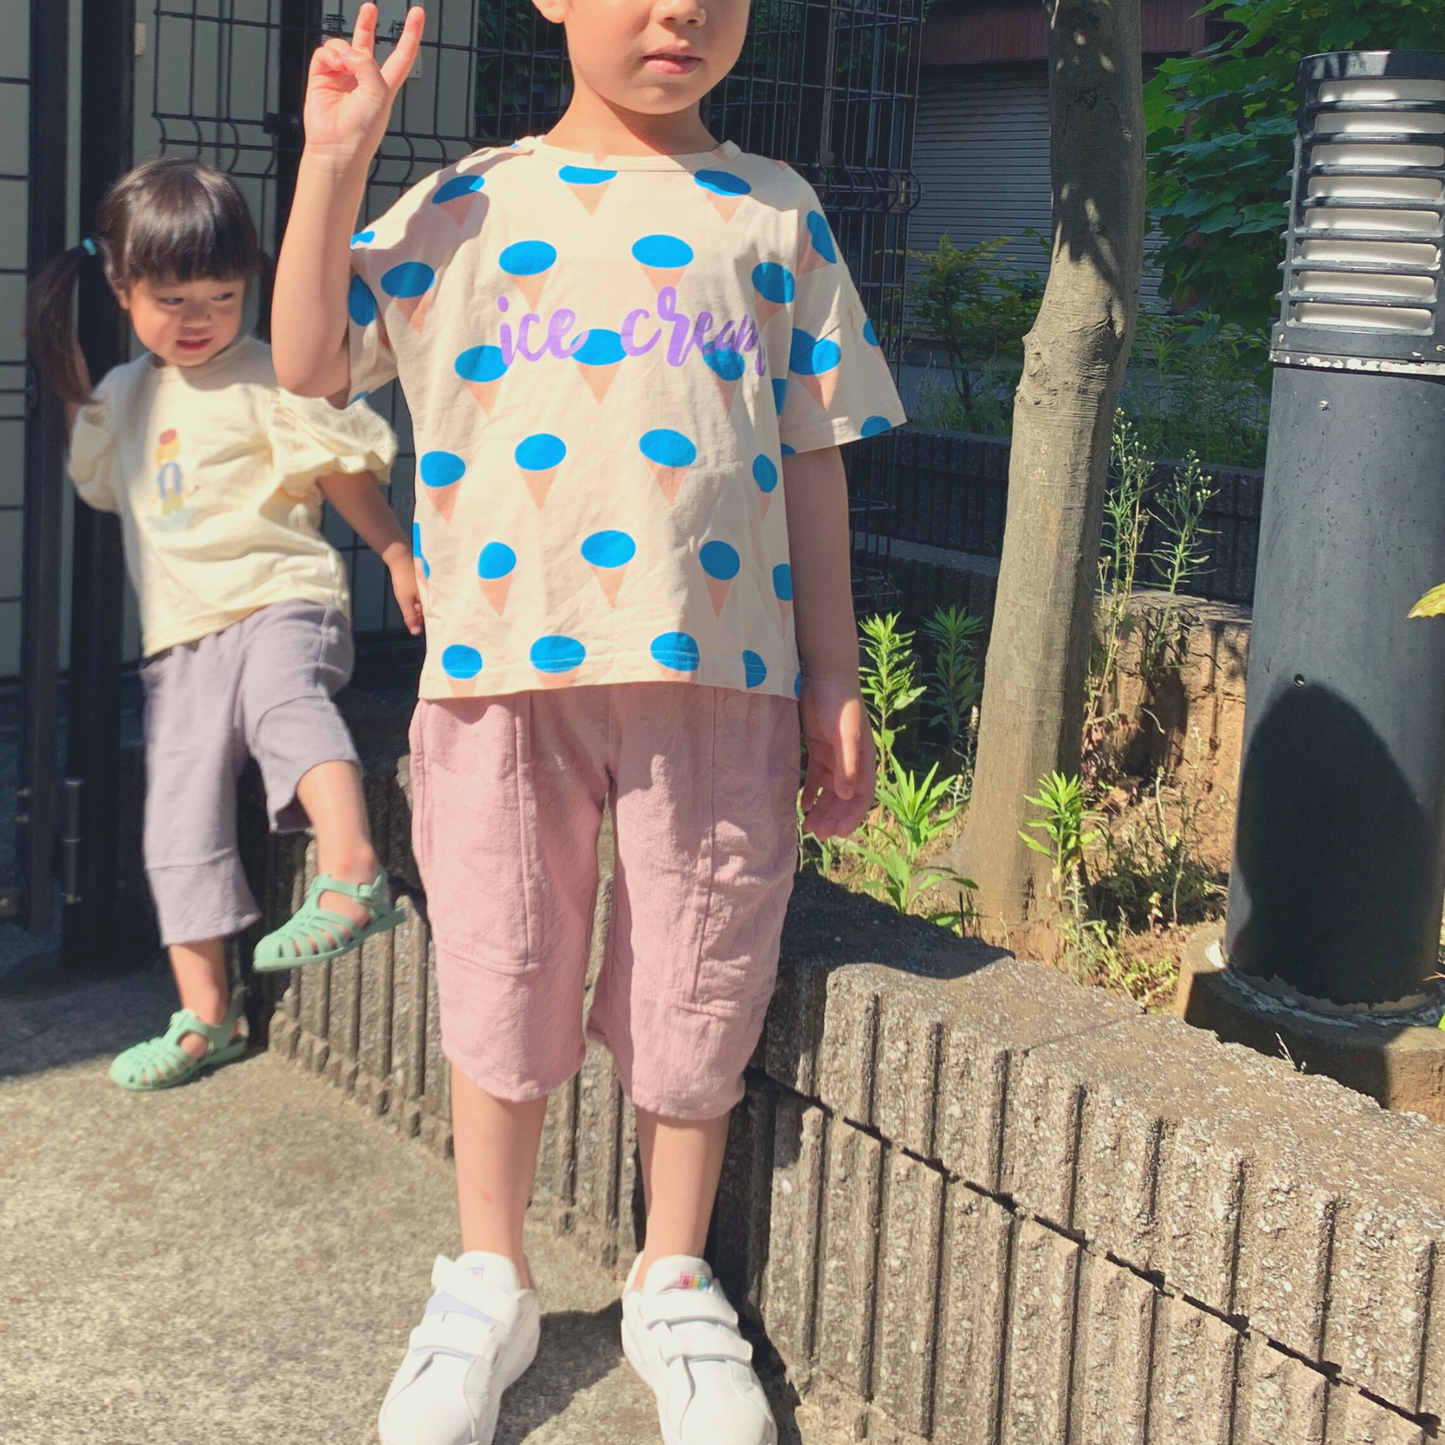 サマー コットン パンツ / summer cotton pants (こども服) - kids clothes shop GUZUGUZU